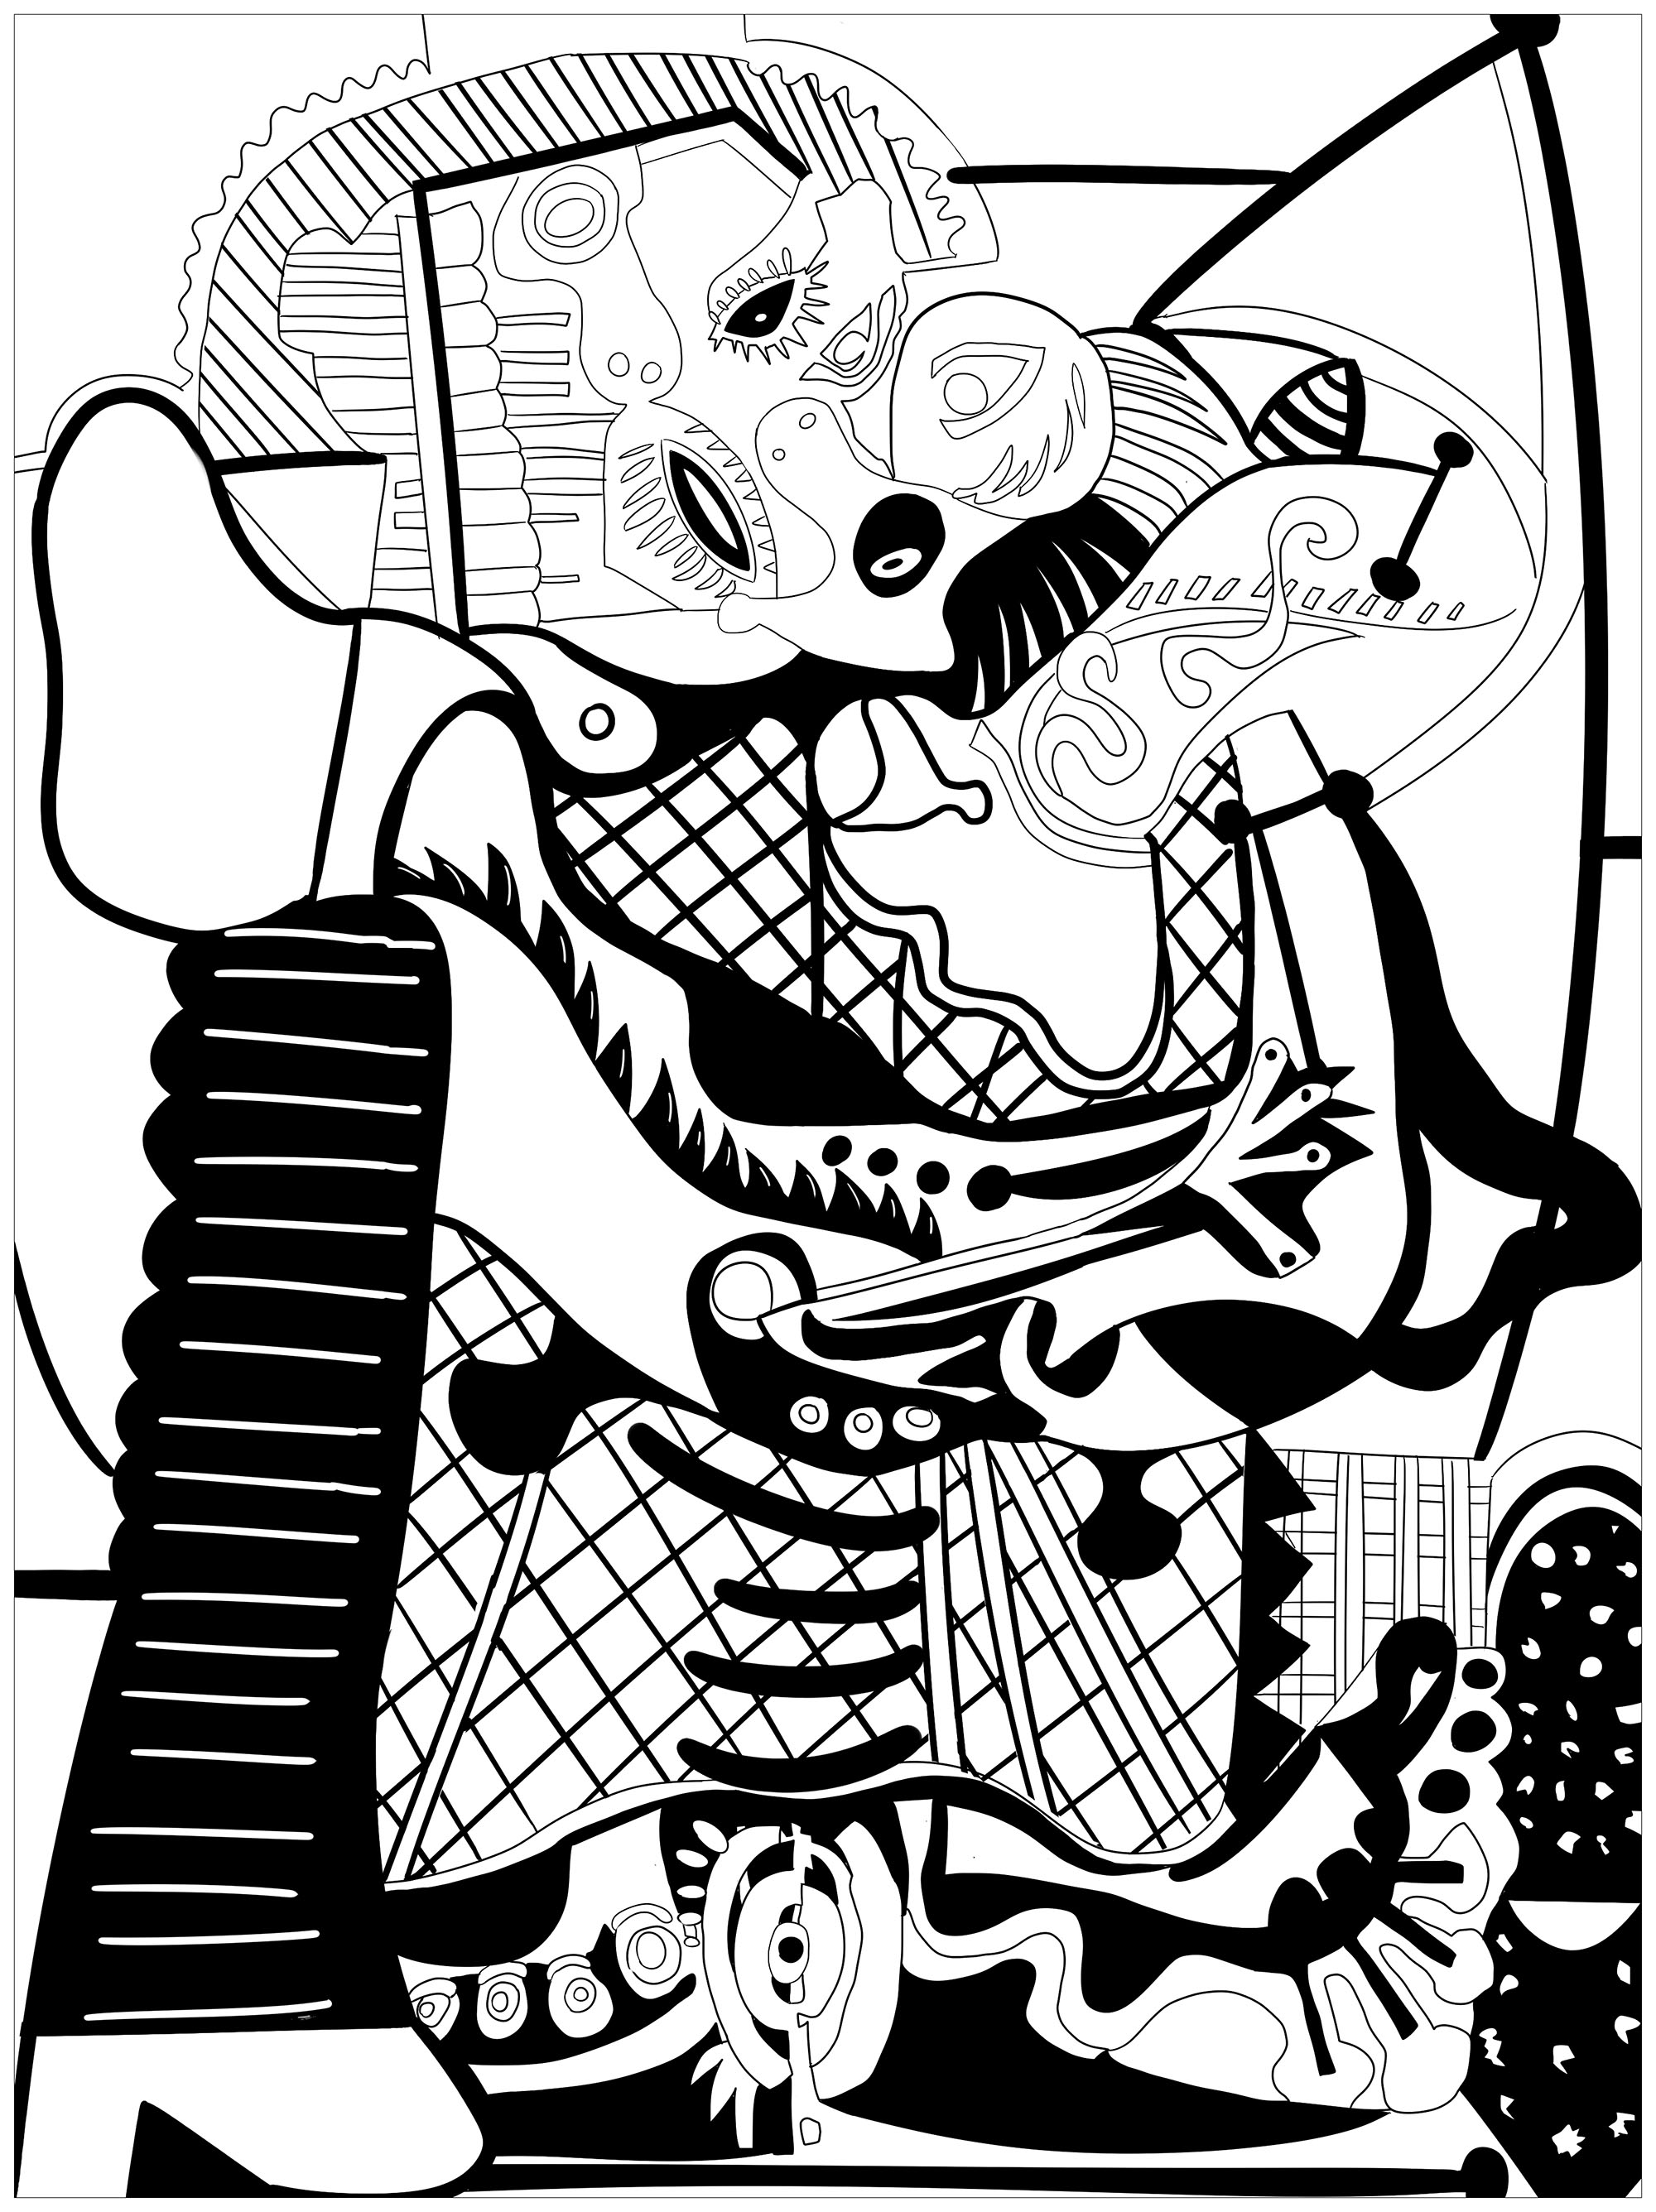 Divertida página para colorear de Pablo Picasso para imprimir y colorear